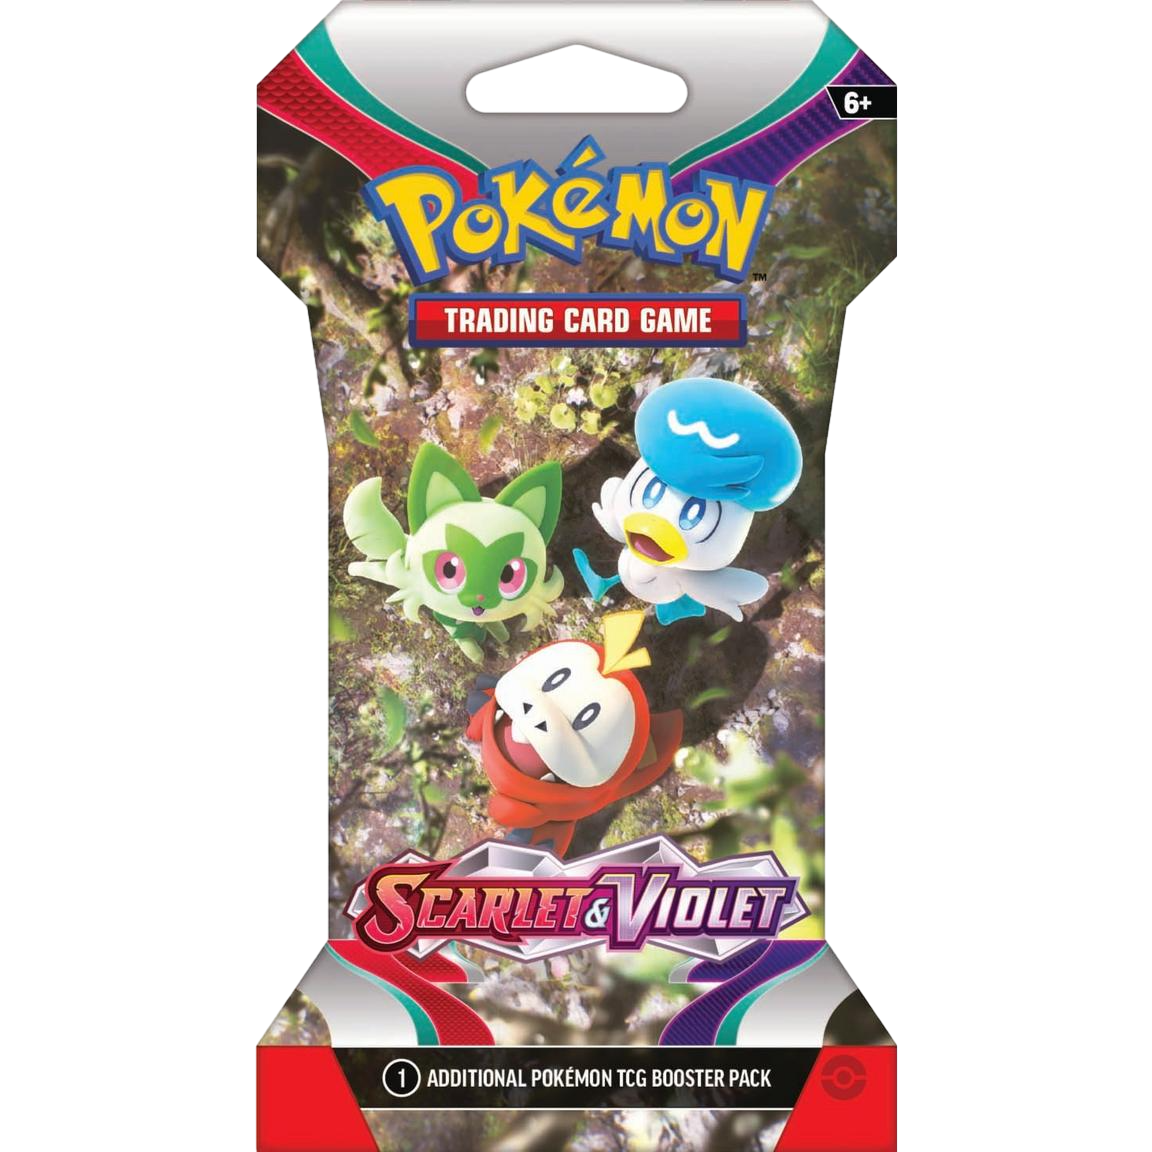 Pokémon TCG: Scarlet & Violet Base Set Sleeved Booster Packs